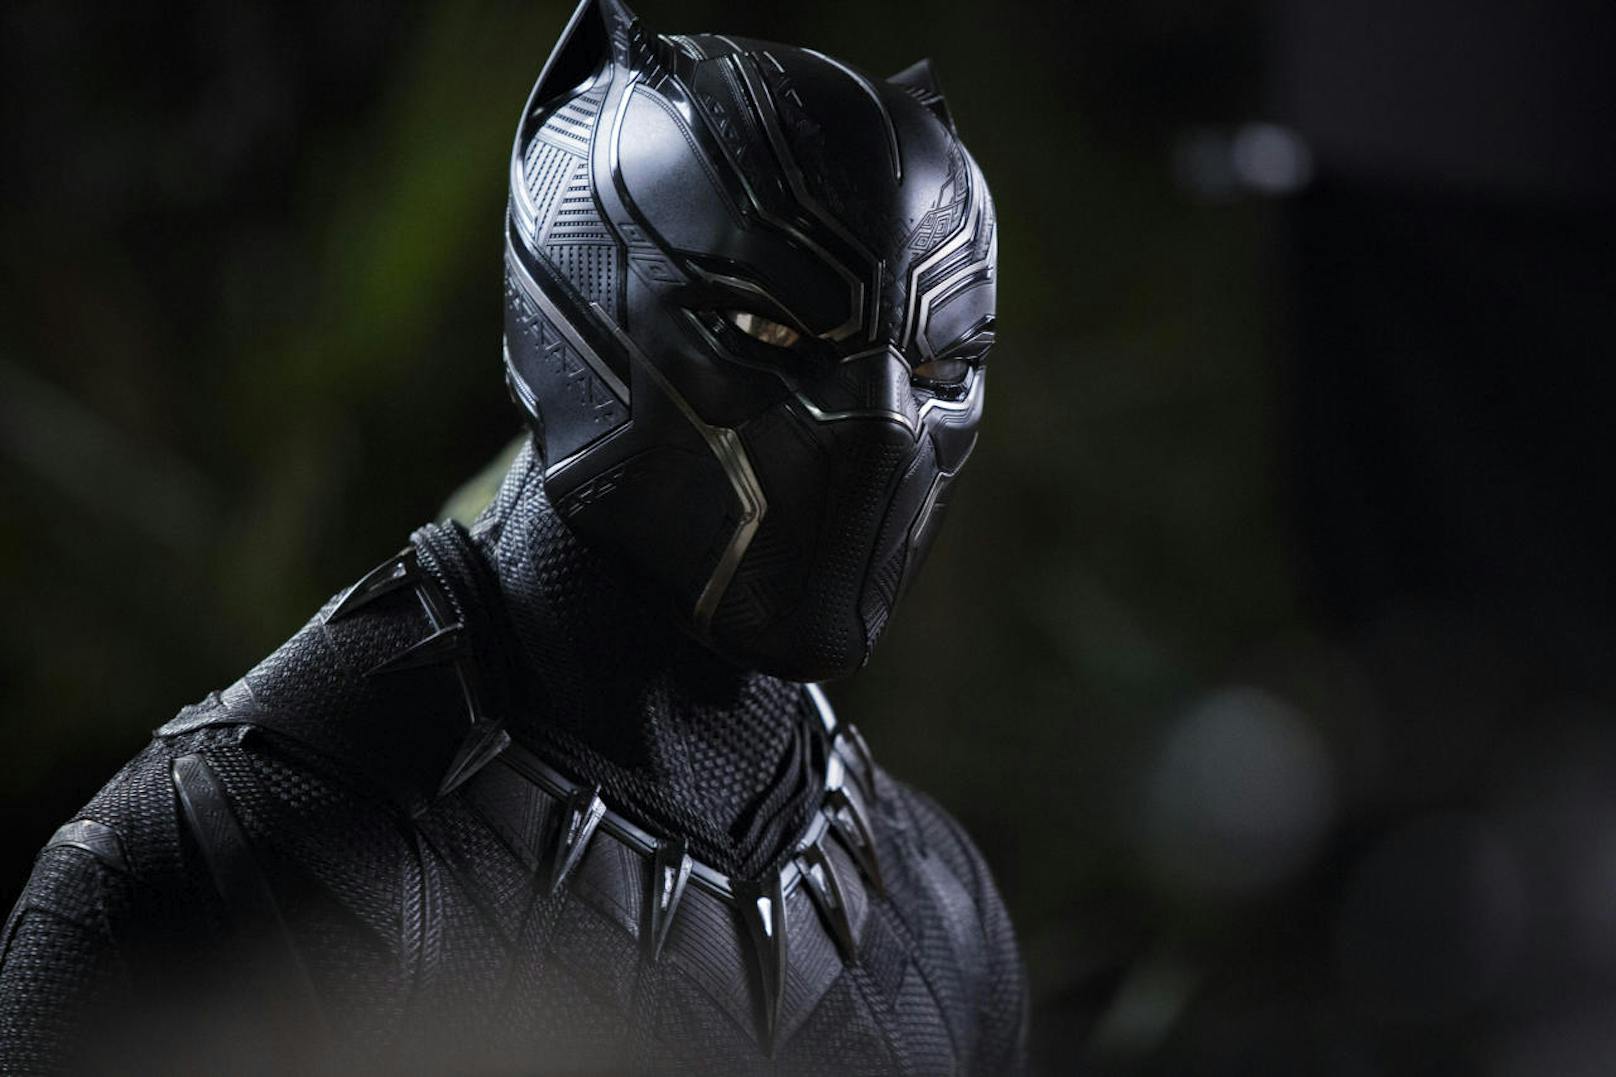 T'Challa/Black Panther (Chadwick Boseman)
